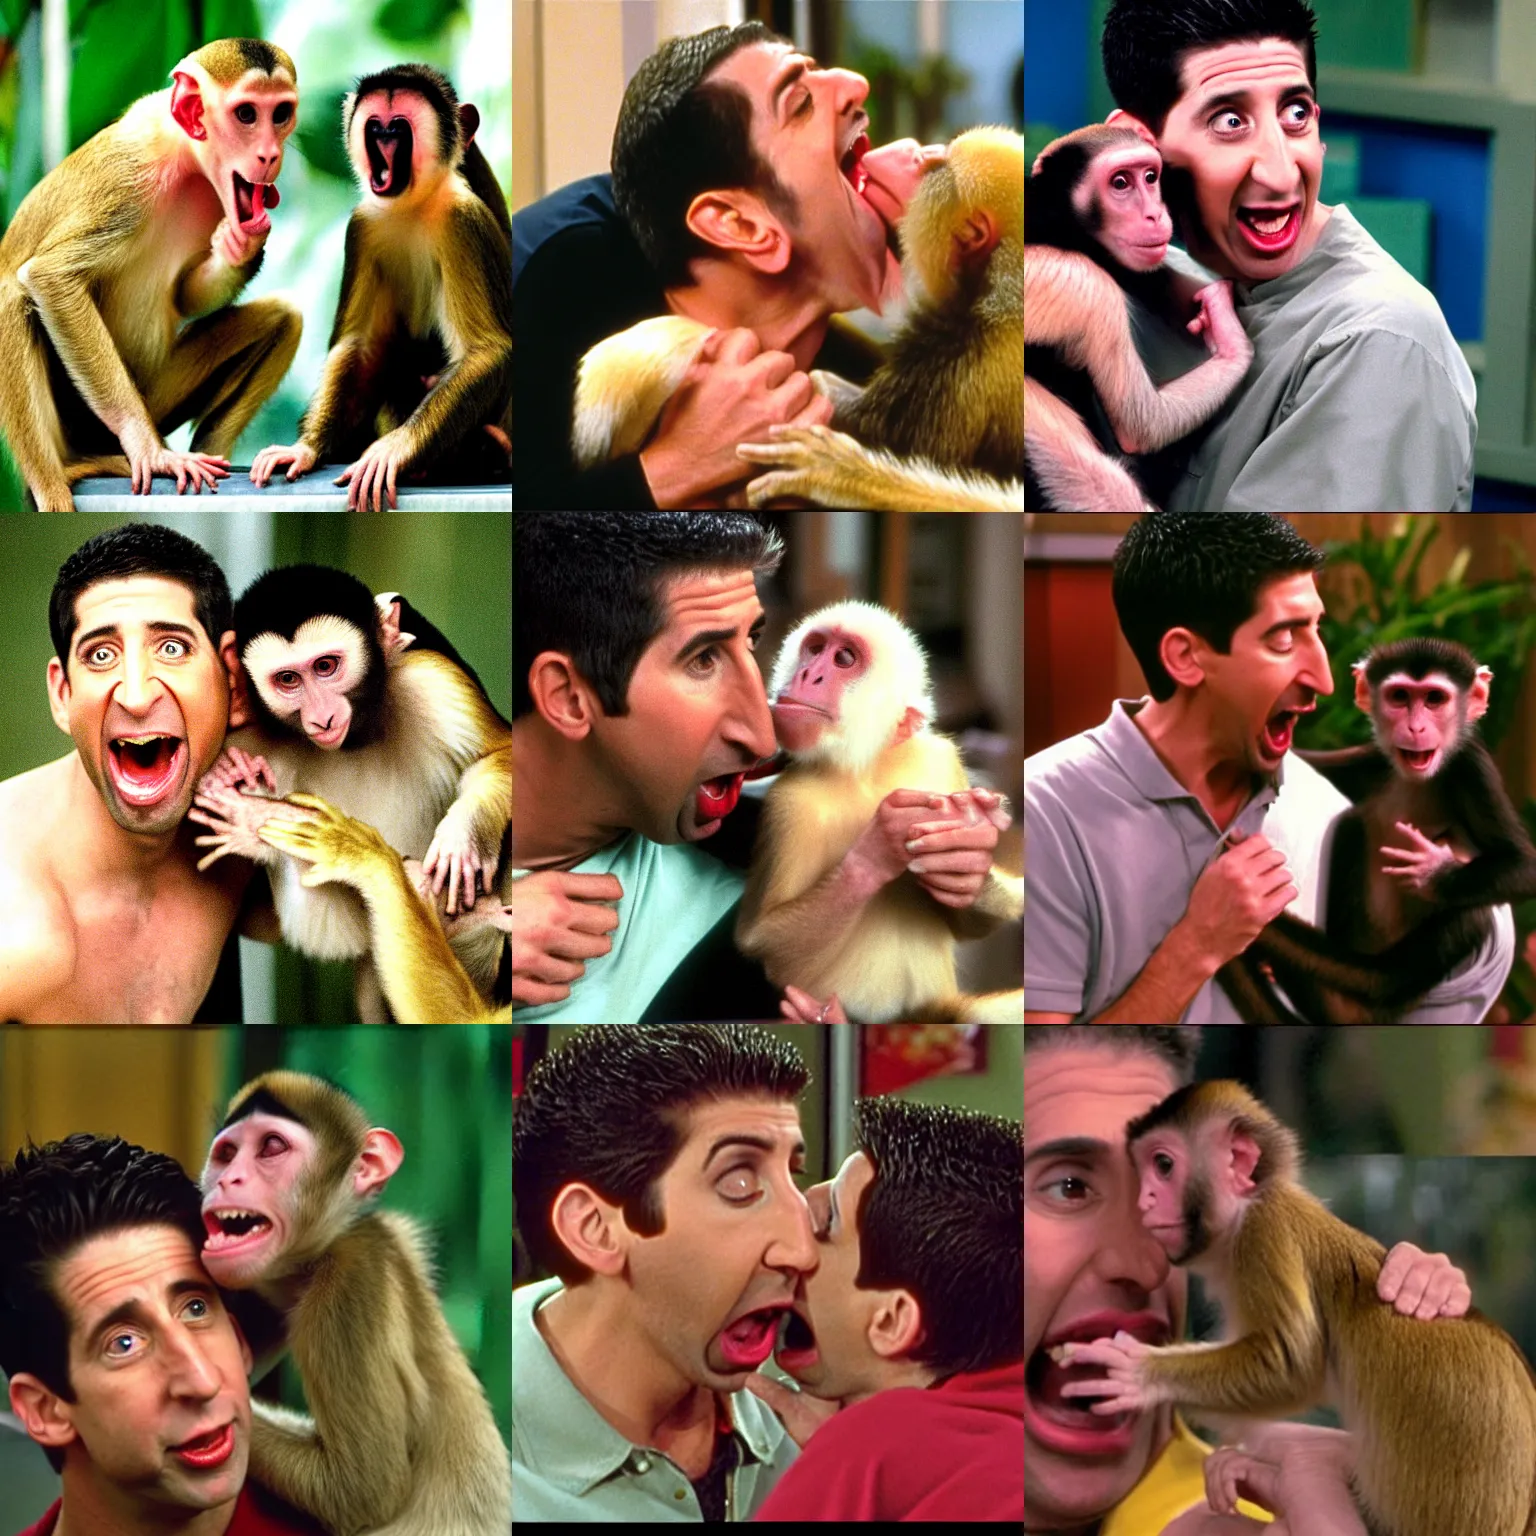 Prompt: ross geller being bitten by a capuchin monkey, ross geller screaming, friends 9 0 s sitcom screenshot,